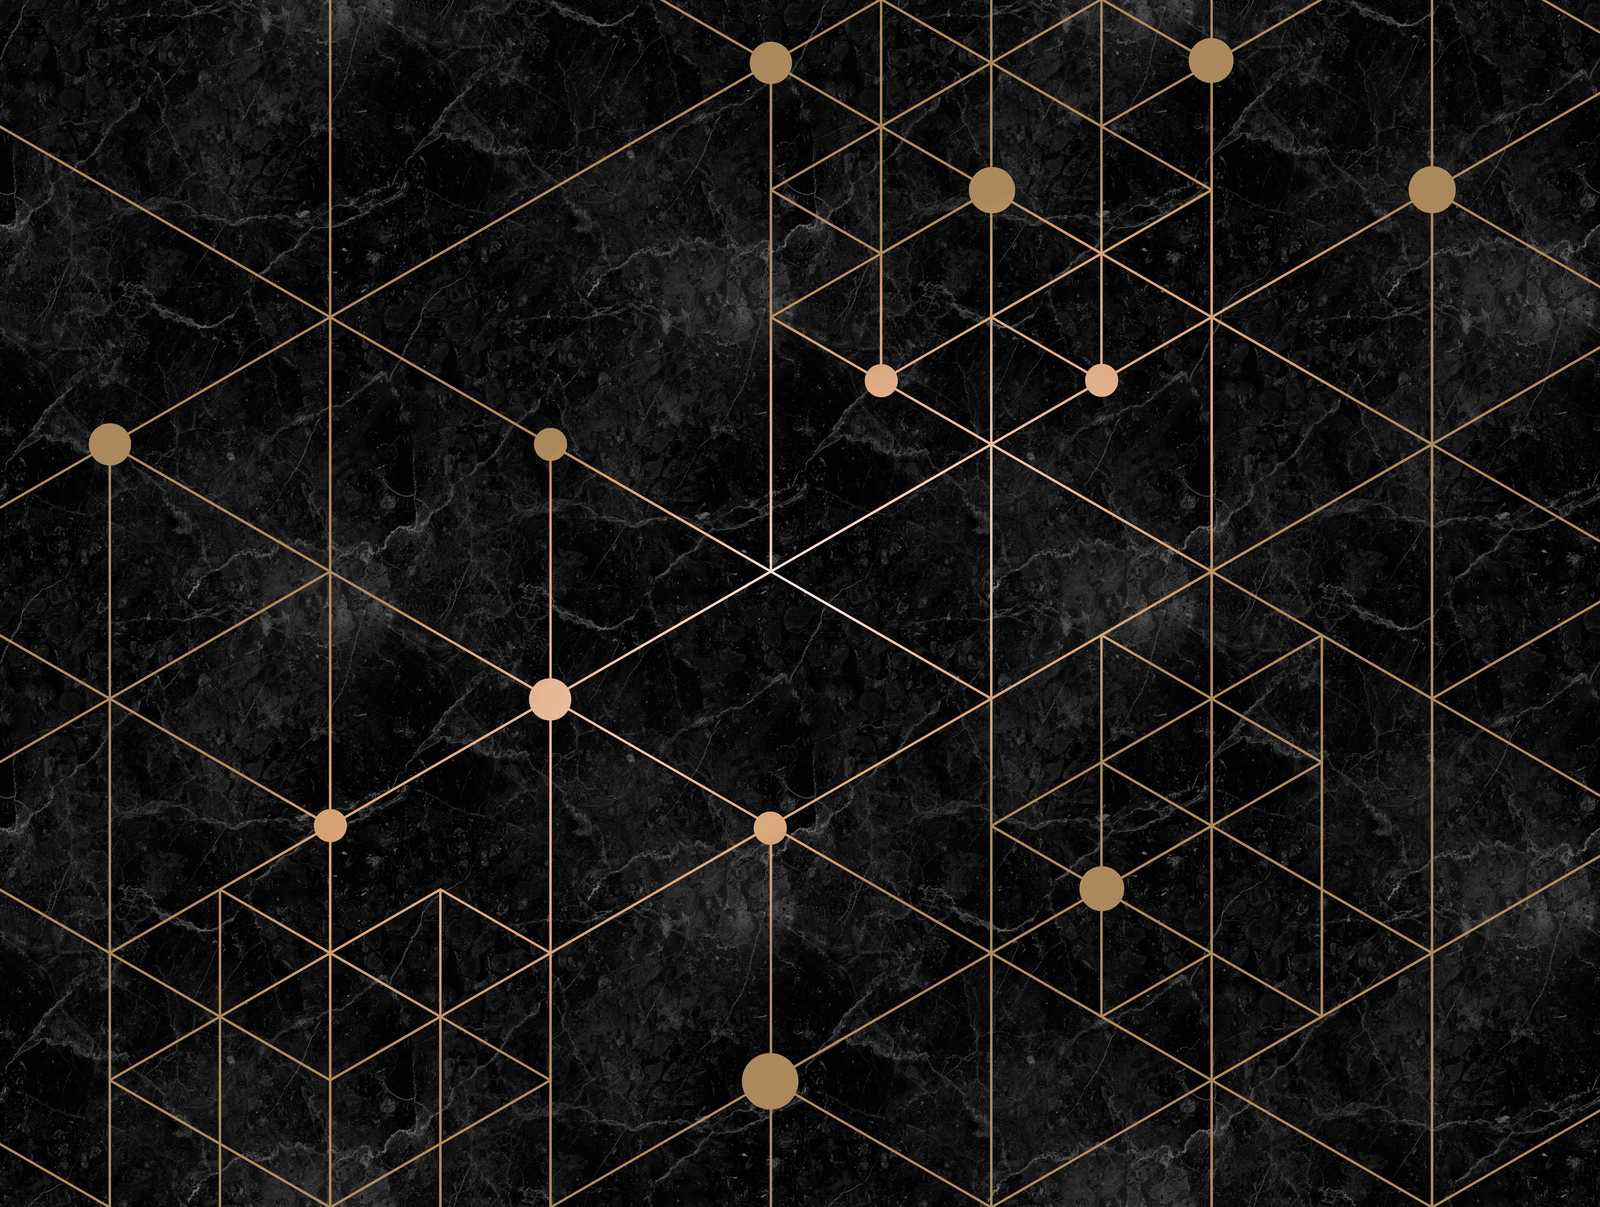             Tapeten-Neuheit – Schwarze Marmor Motivtapete mit Gold Design
        